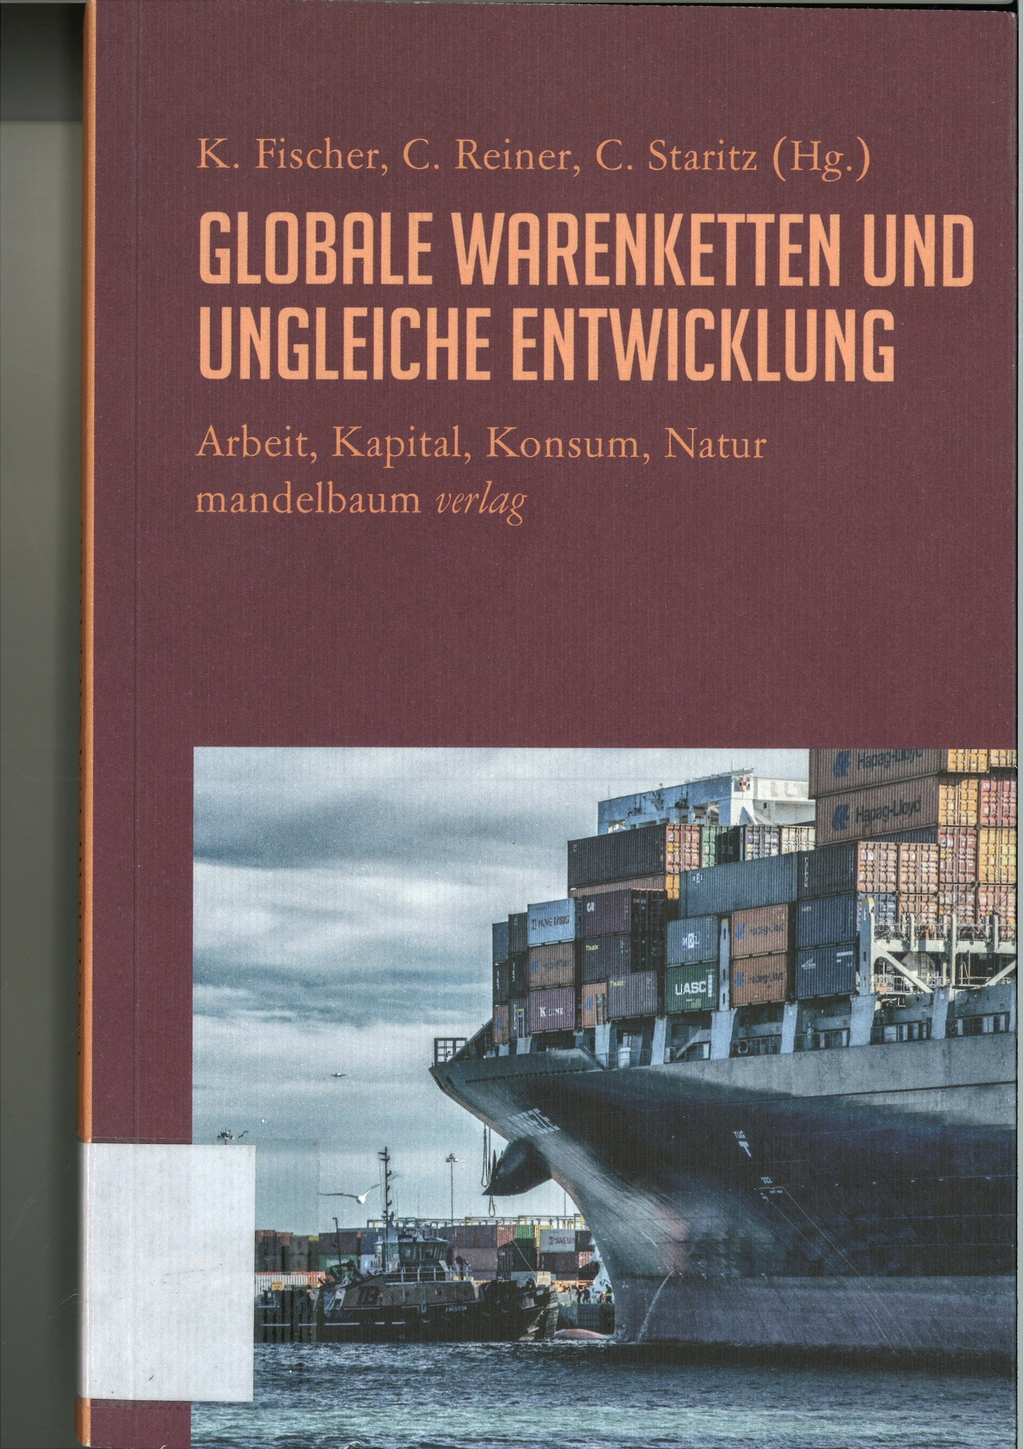 Titelbild des Buches Globale Warenketten und ungleiche Entwicklung: Arbeit, Kapital, Konsum, Natur